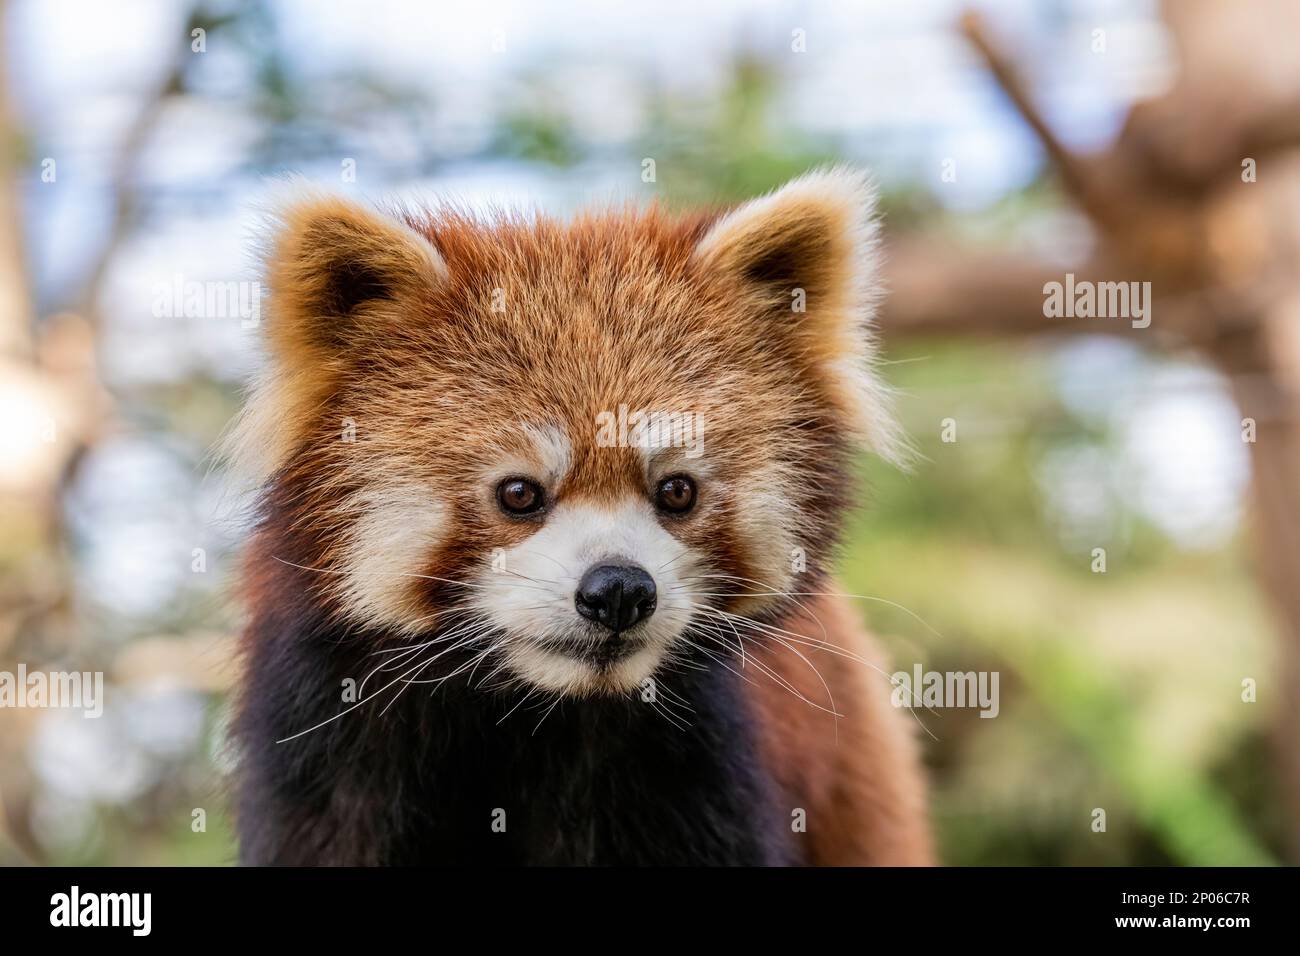 Un panda rouge (Ailurus fulgens) image de gros plan c'est un mammifère originaire de l'est de l'Himalaya et du sud-ouest de la Chine le panda rouge a la fourrure rougeâtre-brun, Banque D'Images